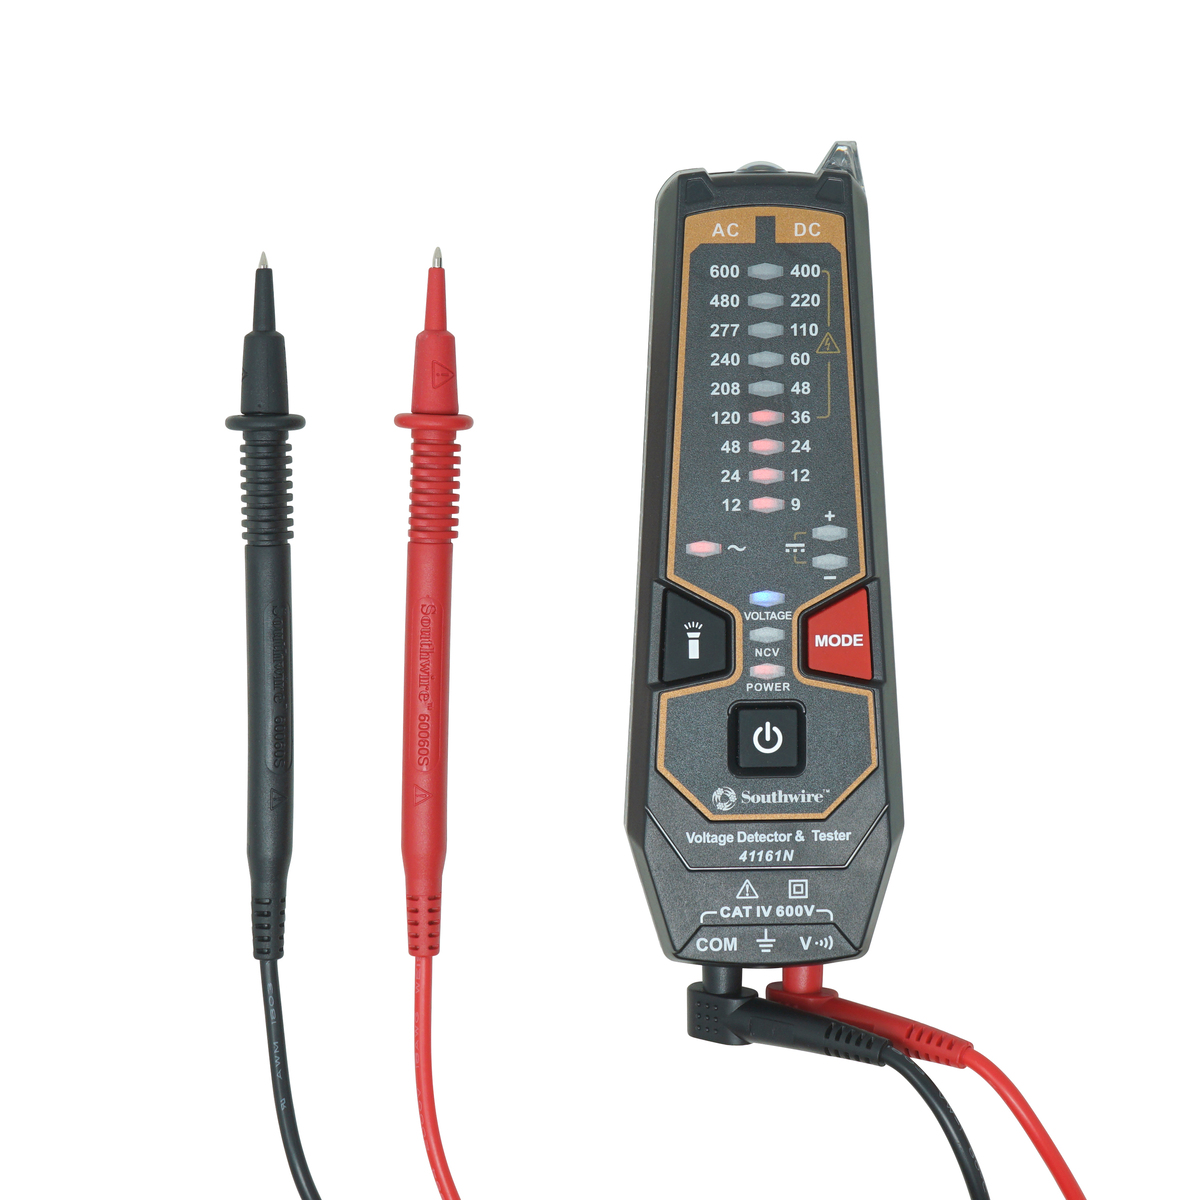 41161N Voltage Detector & Tester